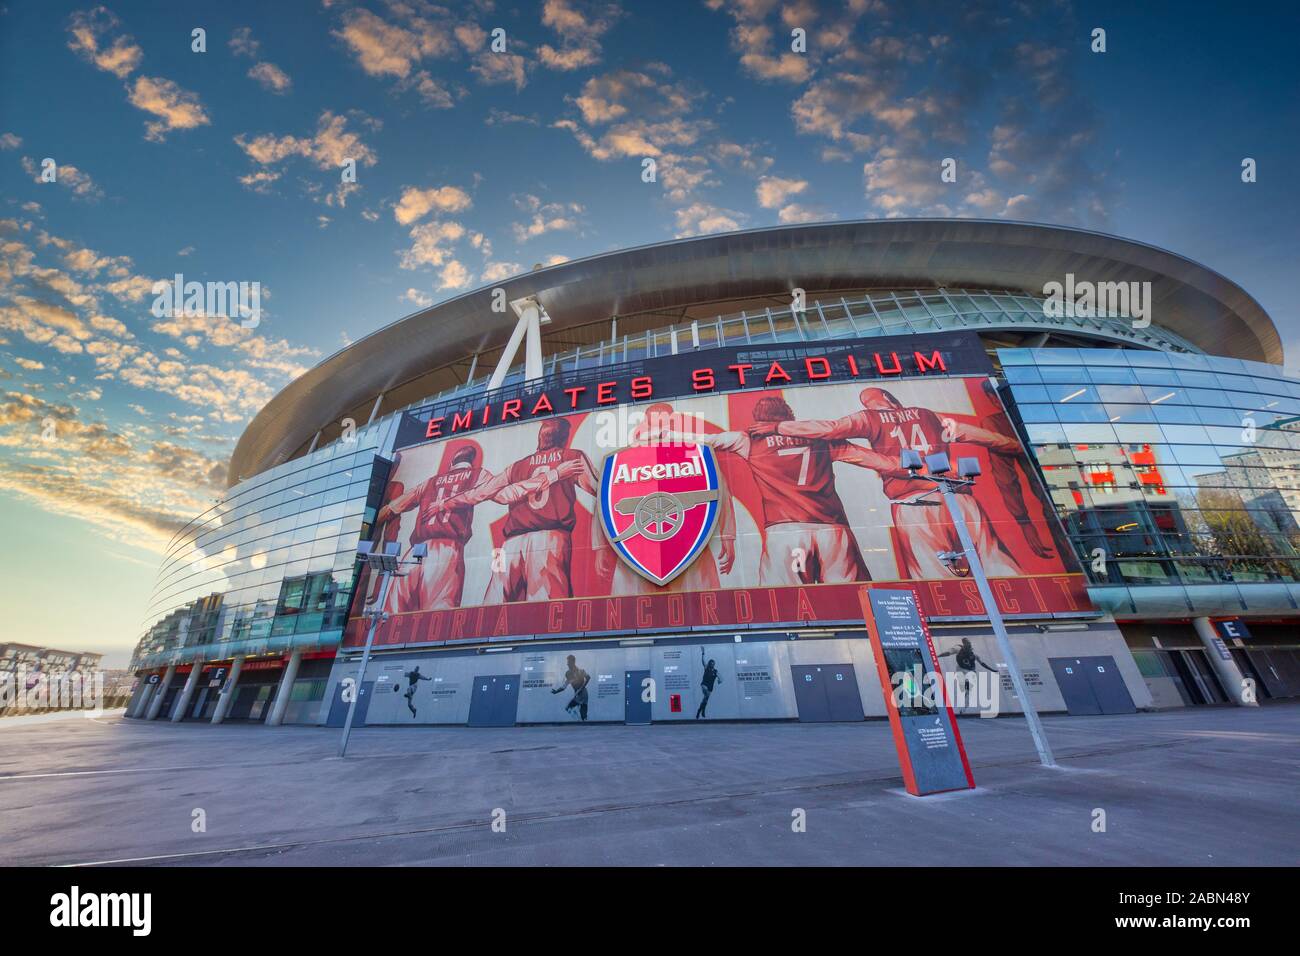 Londra/Inghilterra - 01 February, 2018 : Visita di fronte all'Emirates Stadium di Londra, Regno Unito mostra l'Arsenal armeria o Arsenal shop e biglietto s Foto Stock